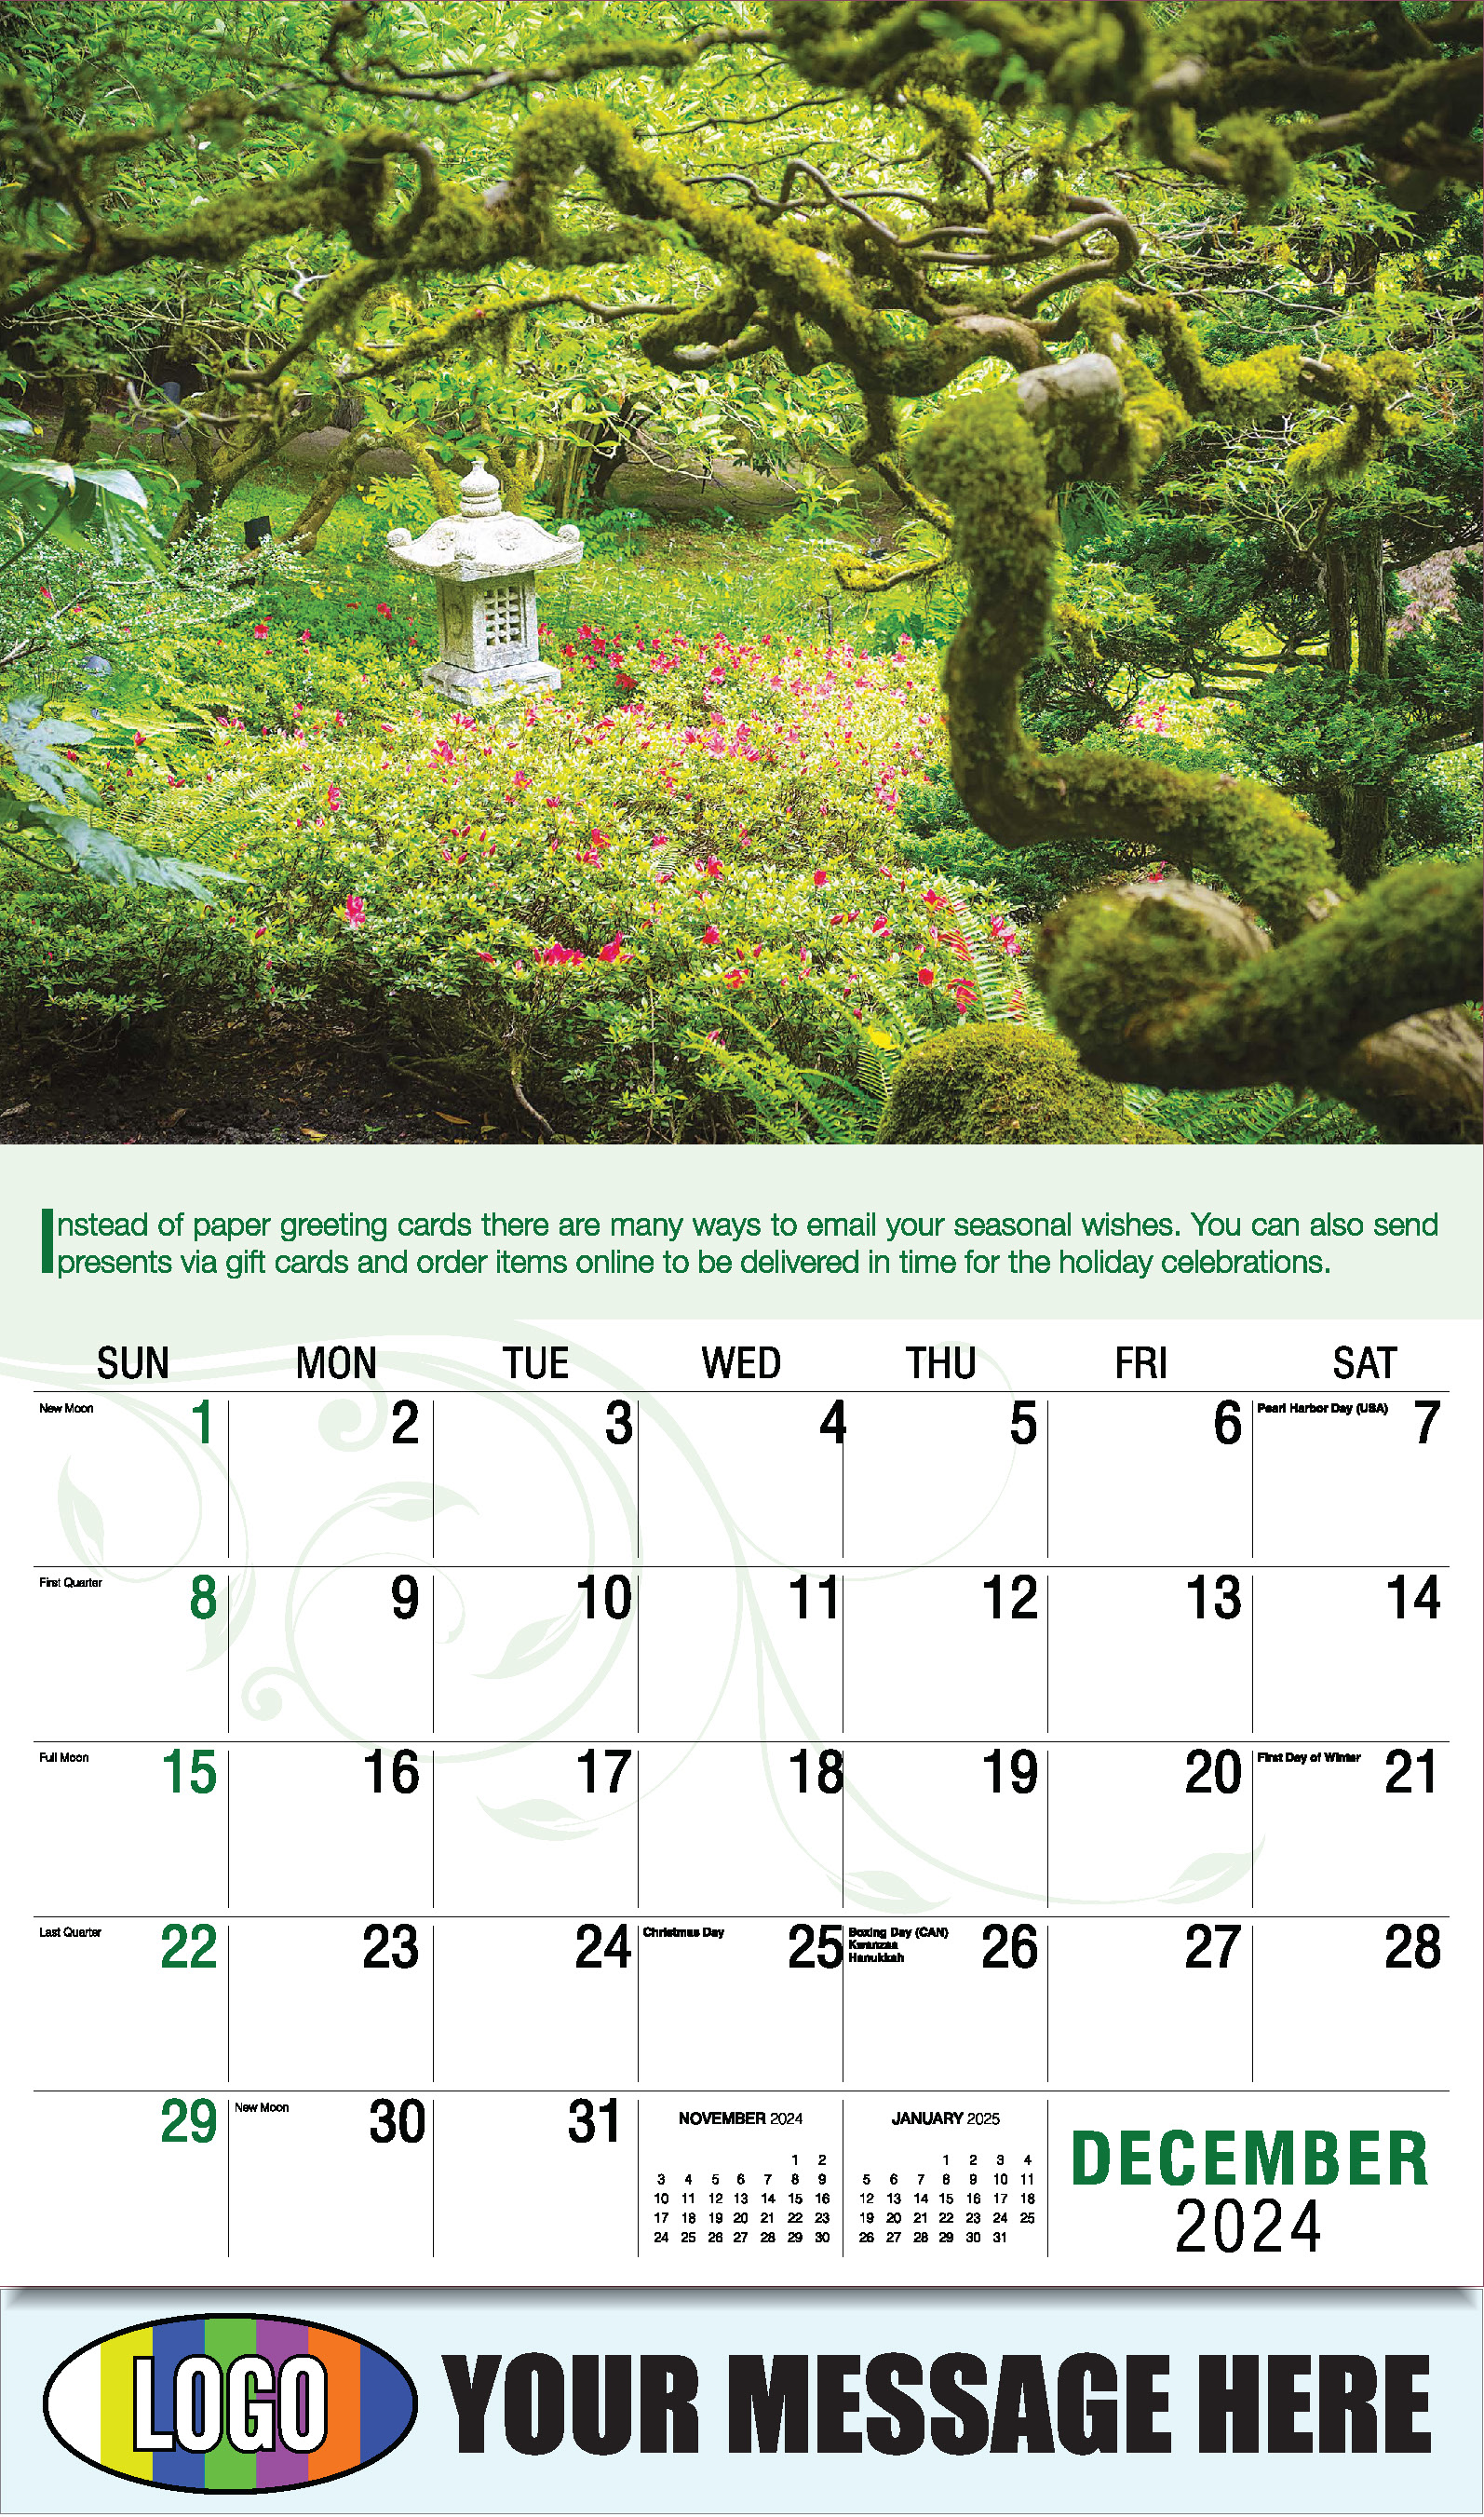 Go Green 2025 Business Promotion Calendar - December_a